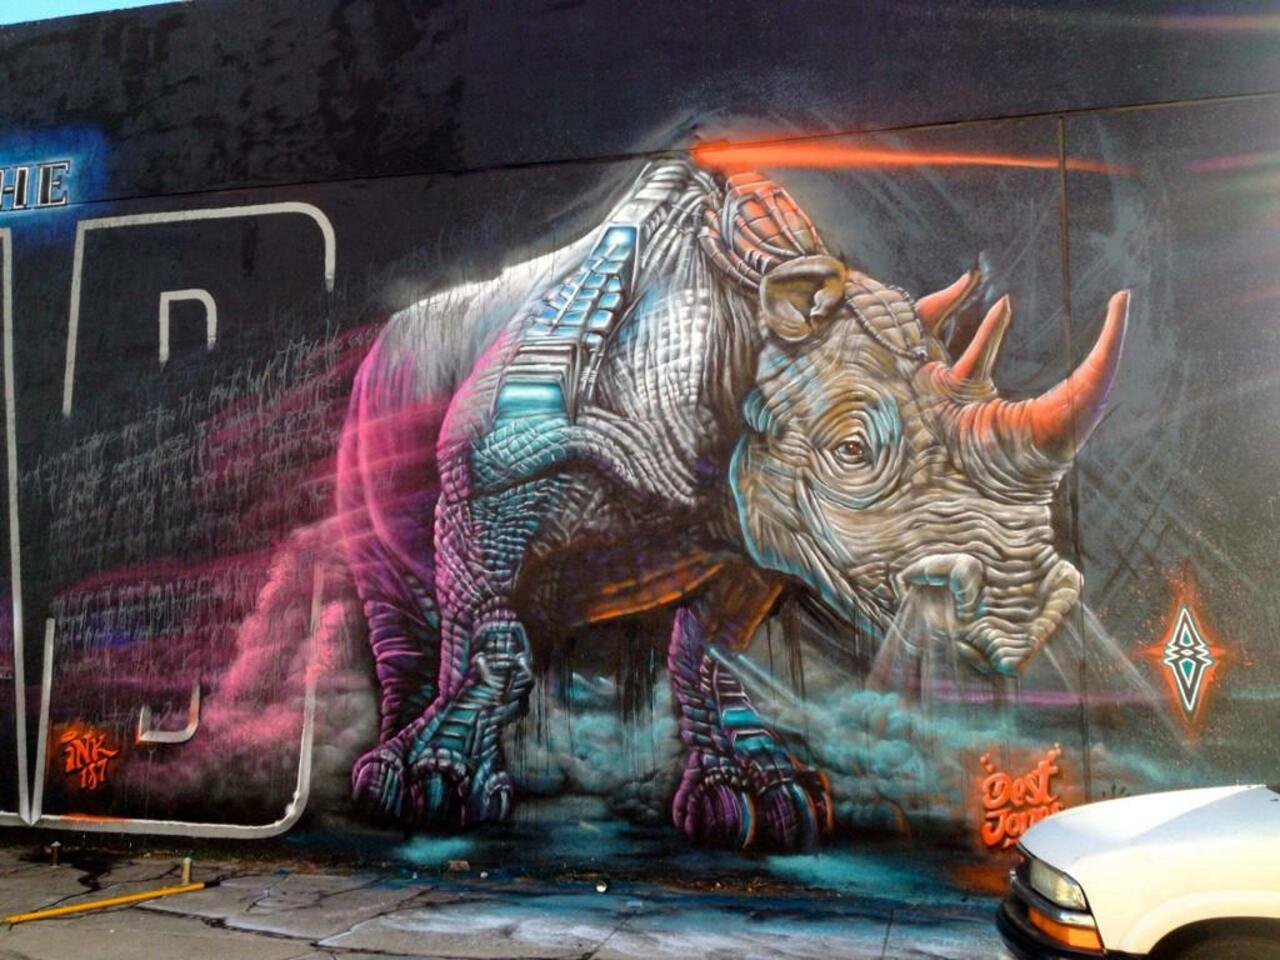 “@GoogleStreetArt: Incredible Street Art by artist Dest 

#art #mural #graffiti #streetart http://t.co/kTCLAlegfx”#greatness